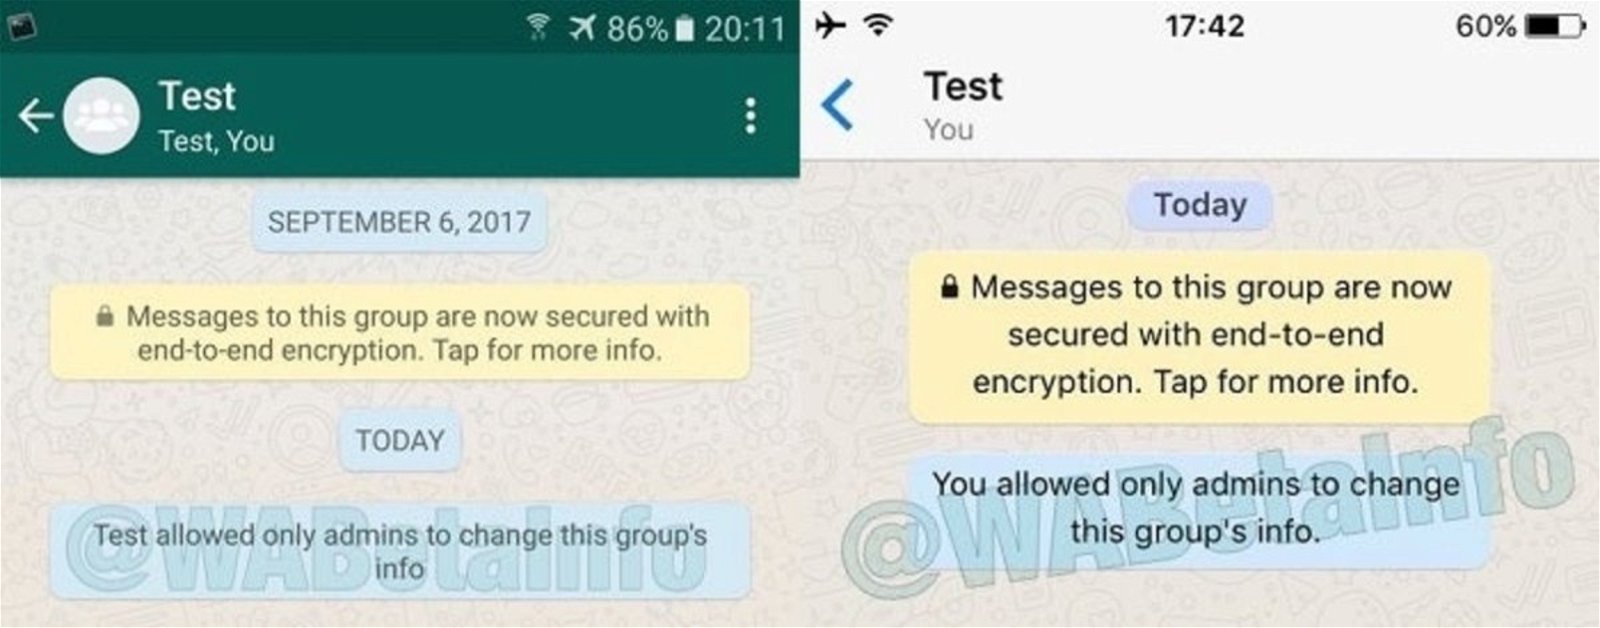 whatsapp funciones grupos